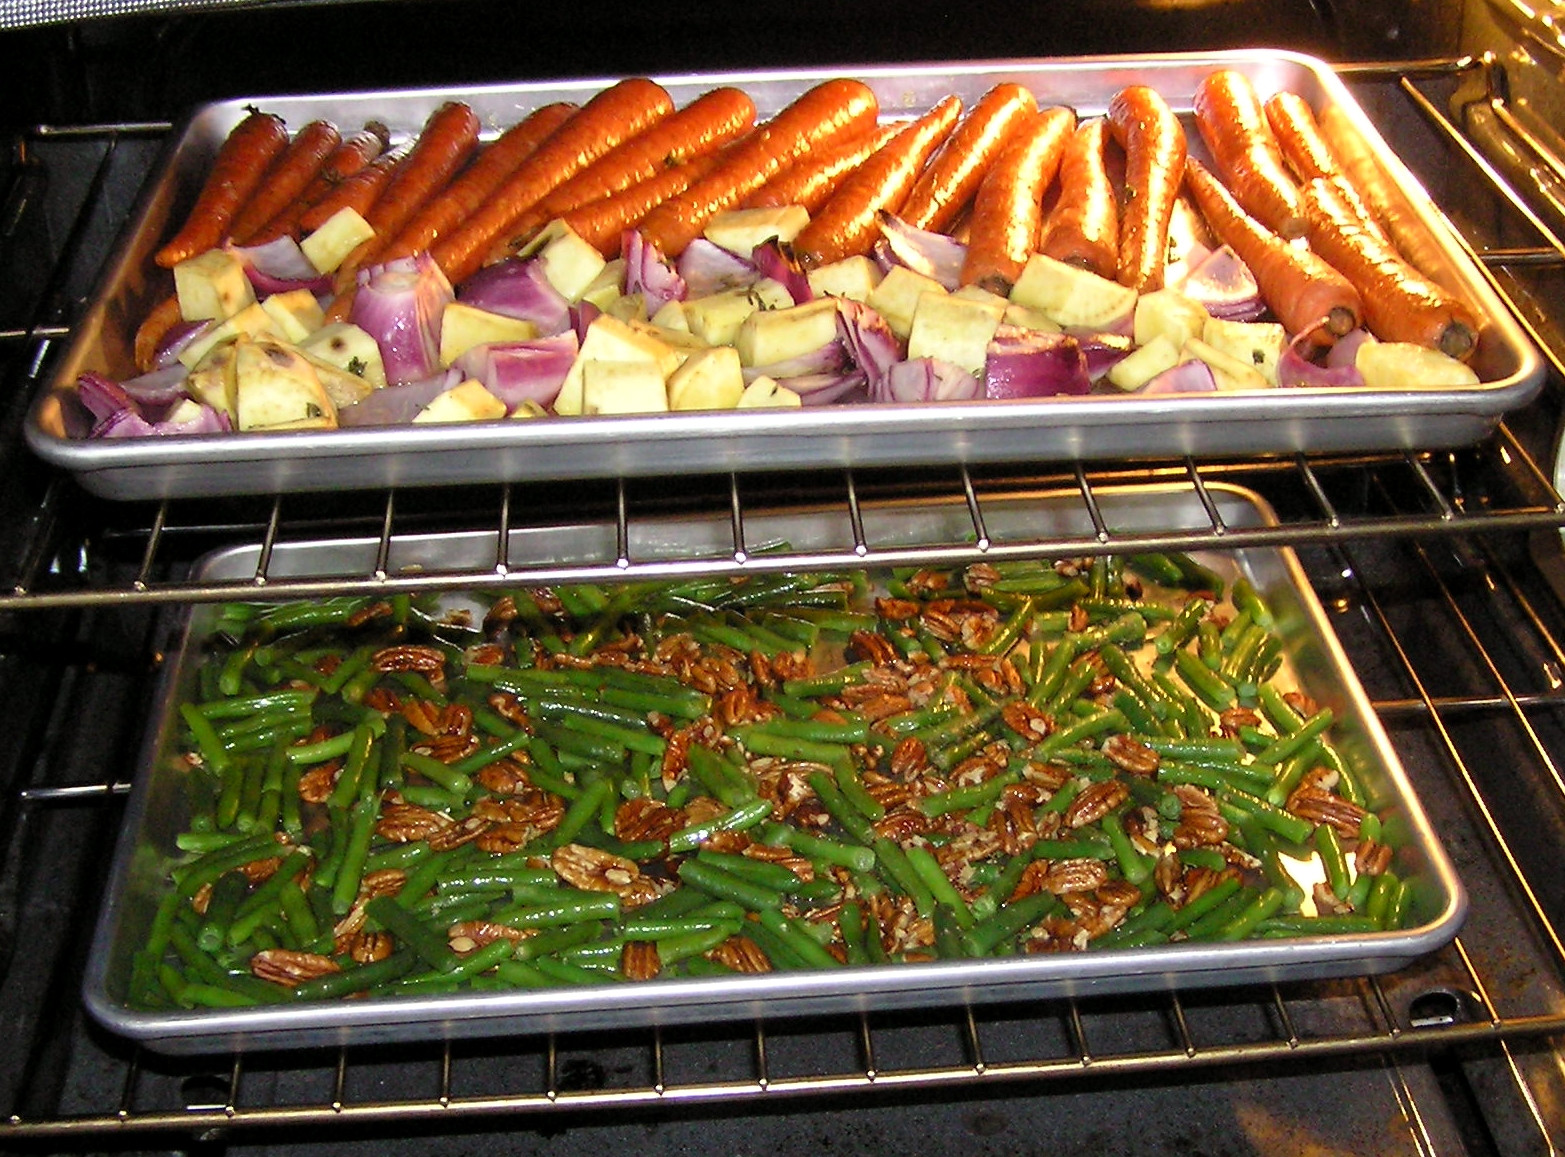 Easter Dinner Vegetable Recipes
 Ve arian Easter dinner